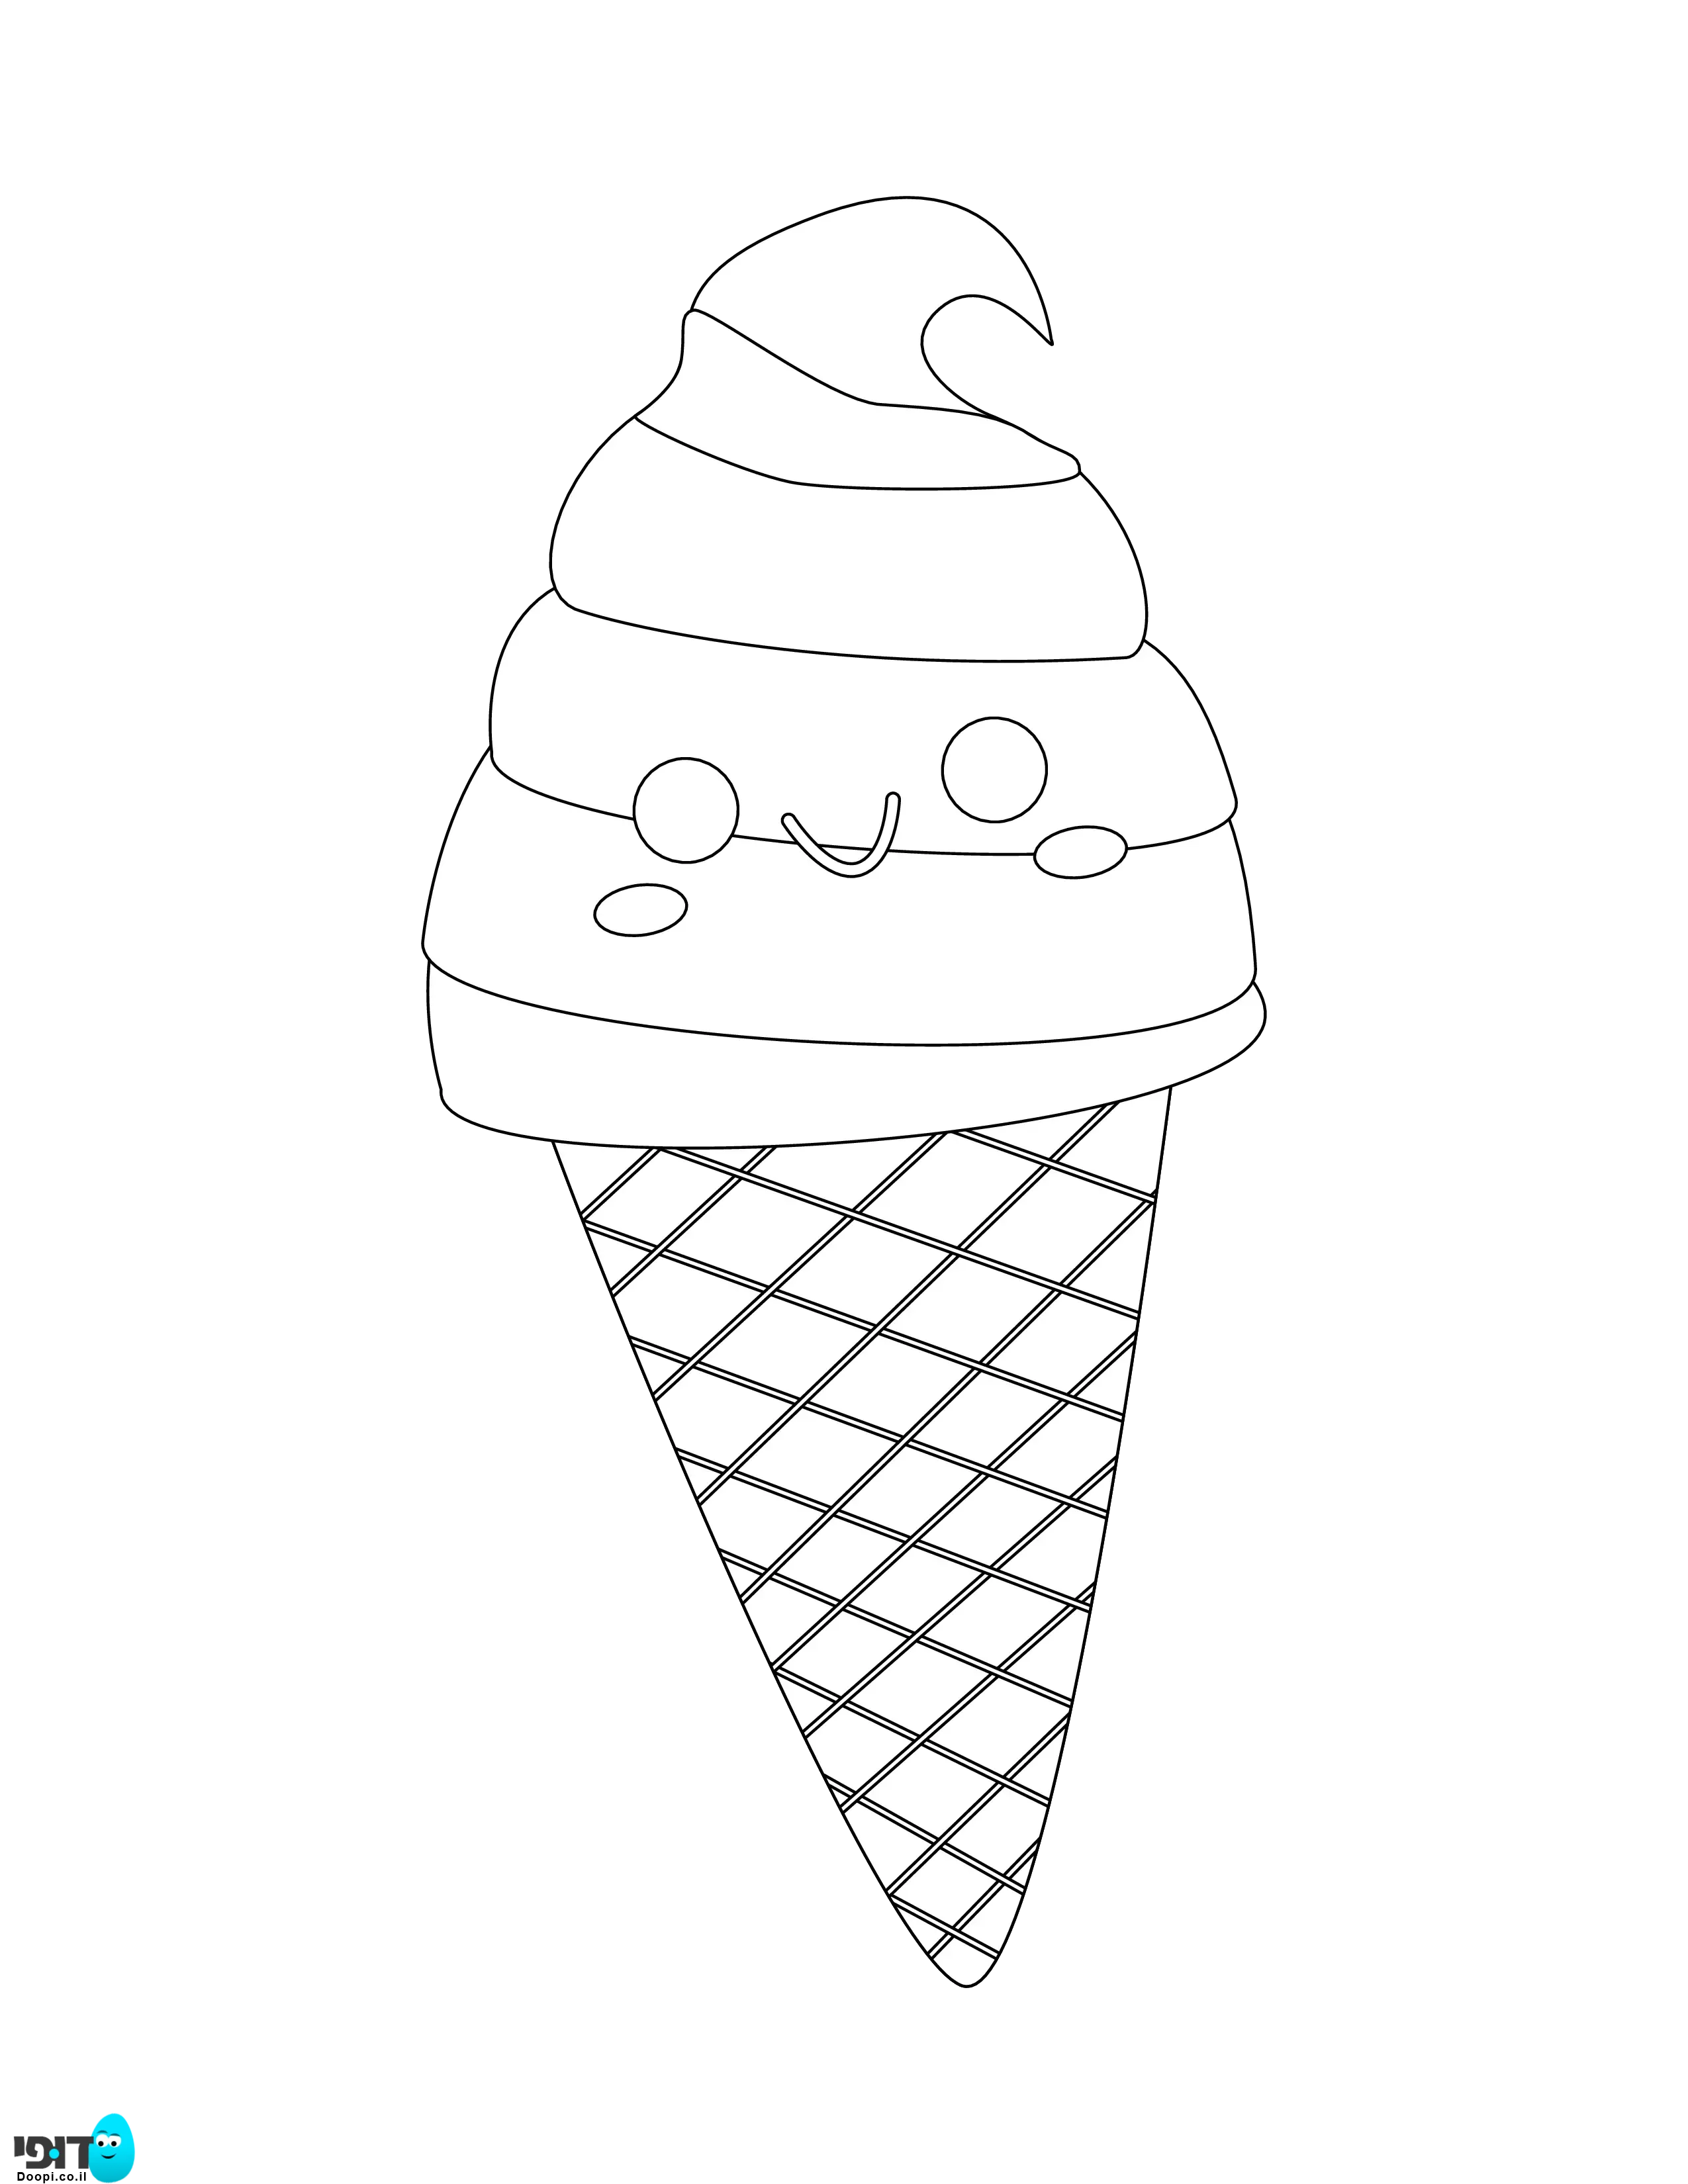 דף צביעה גלידה פרצוף